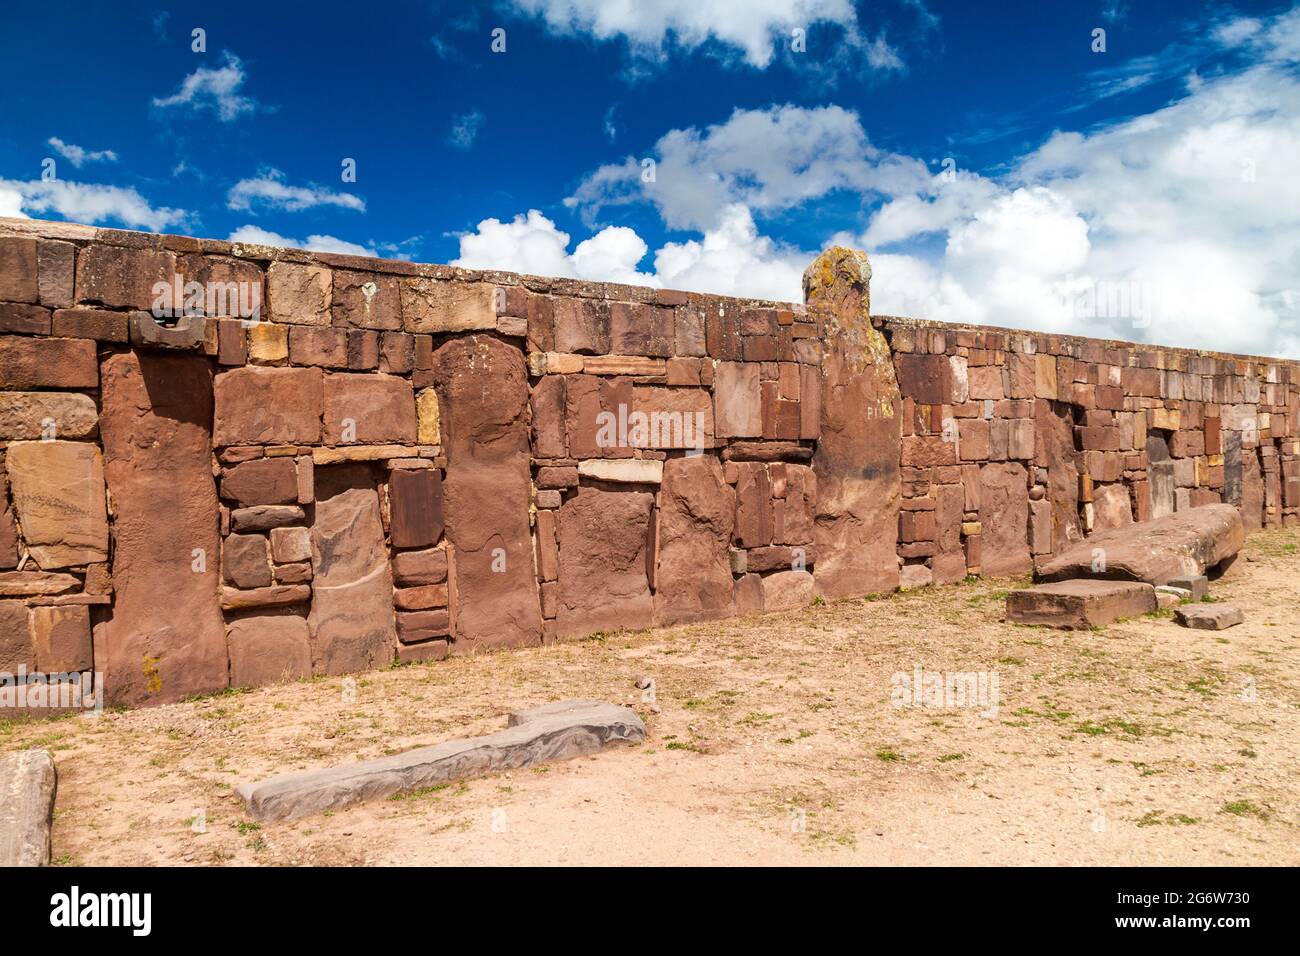 Ruines de Tiwanaku, Bolivie. Tiwanaku est une ancienne ville près du lac Titicaca, 12-17 av. J.-C. Banque D'Images